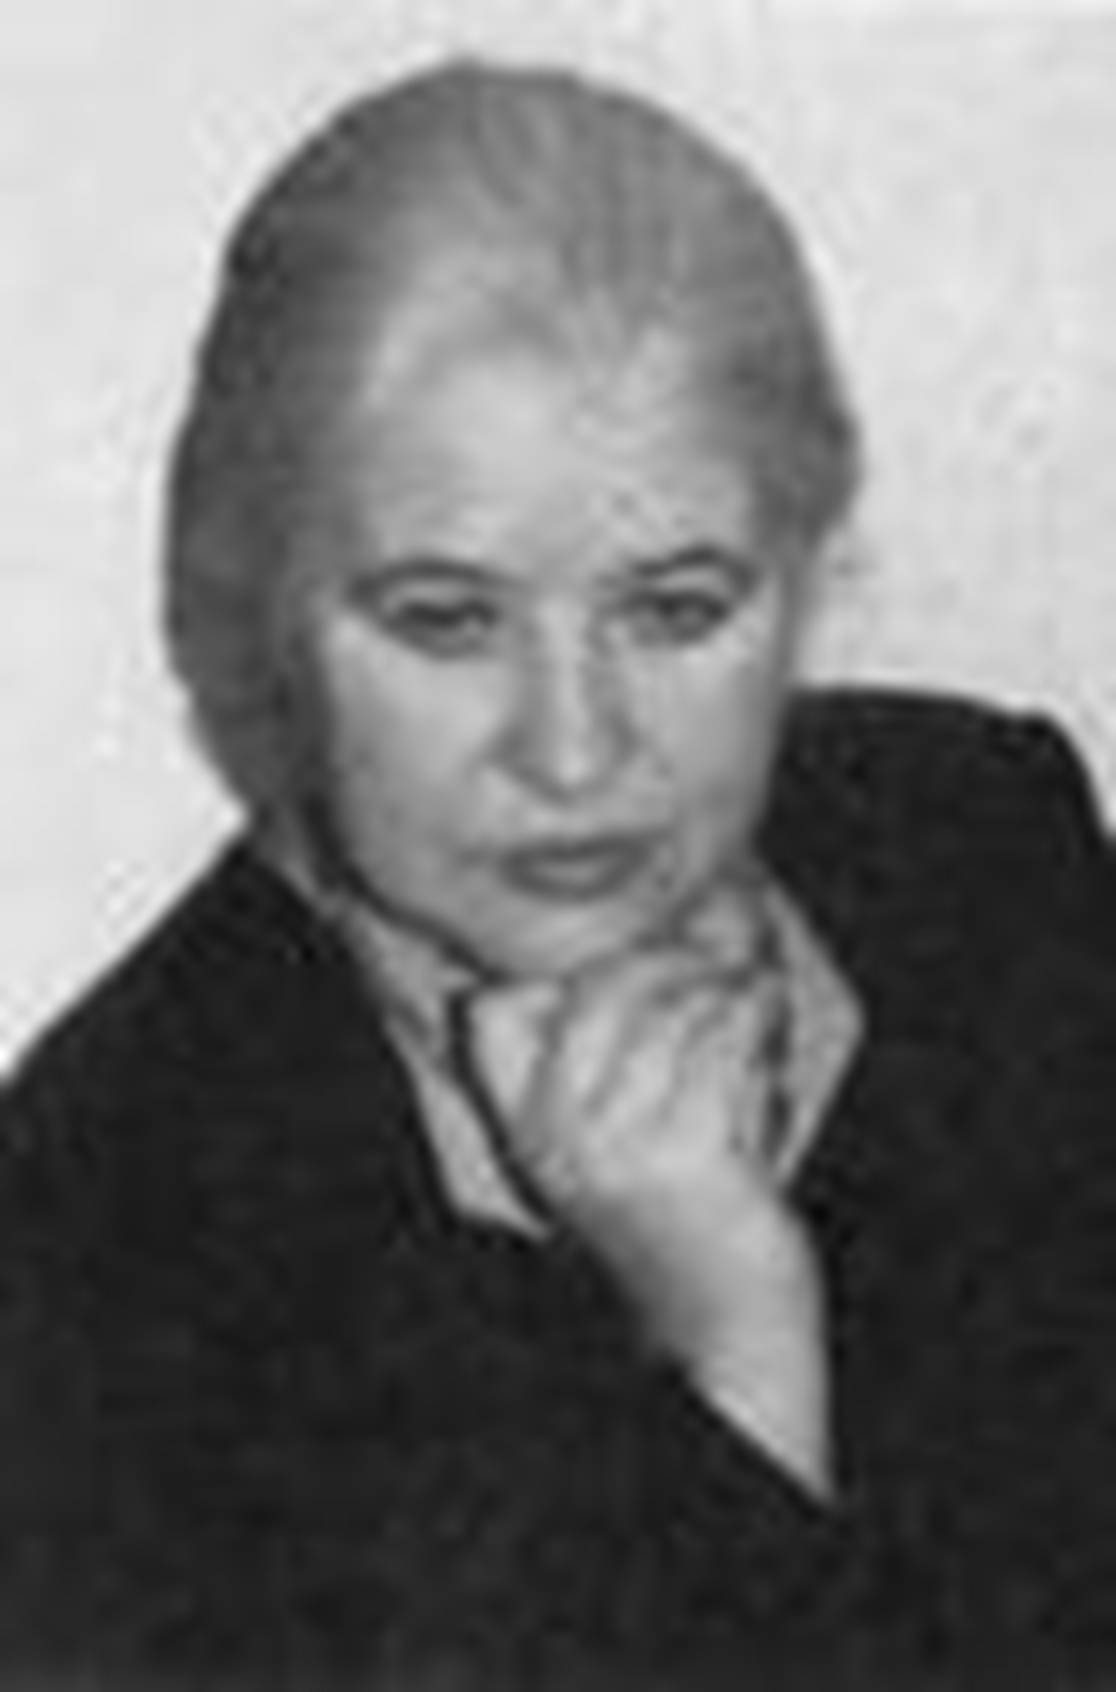 6 ноября 80 лет со дня рождения Ирены Язеповны Панченко (6 ноября1938, г.Краслава, Латвия - ), поэта, писателя, художника,общественного деятеля